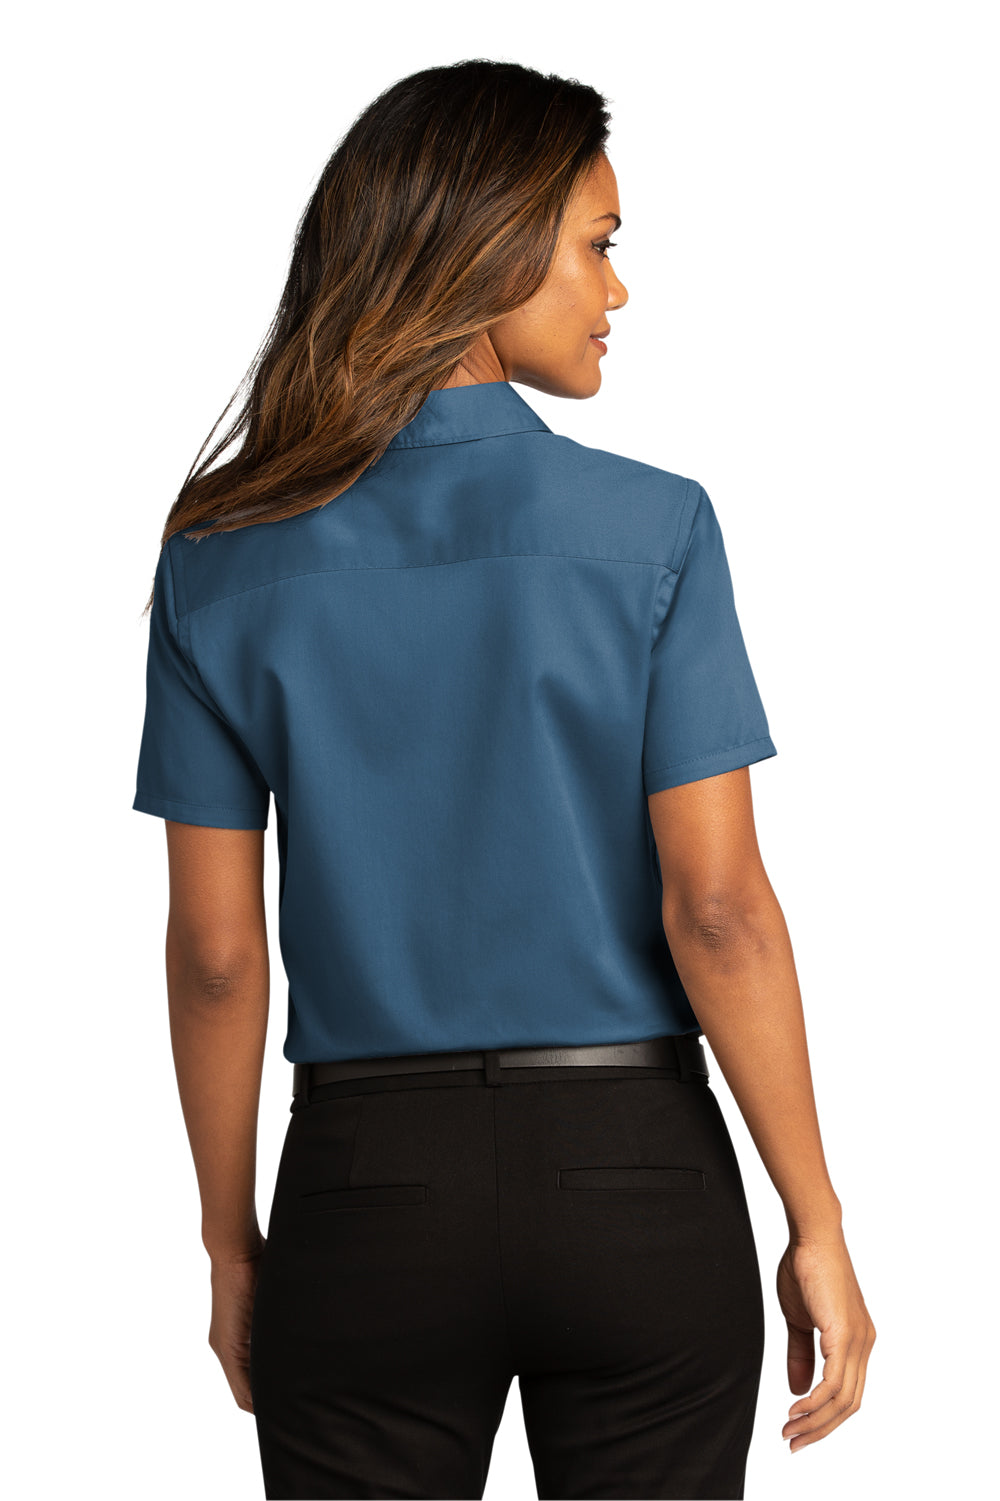 Port Authority Womens SuperPro React Short Sleeve Button Down Shirt Regatta Blue Side